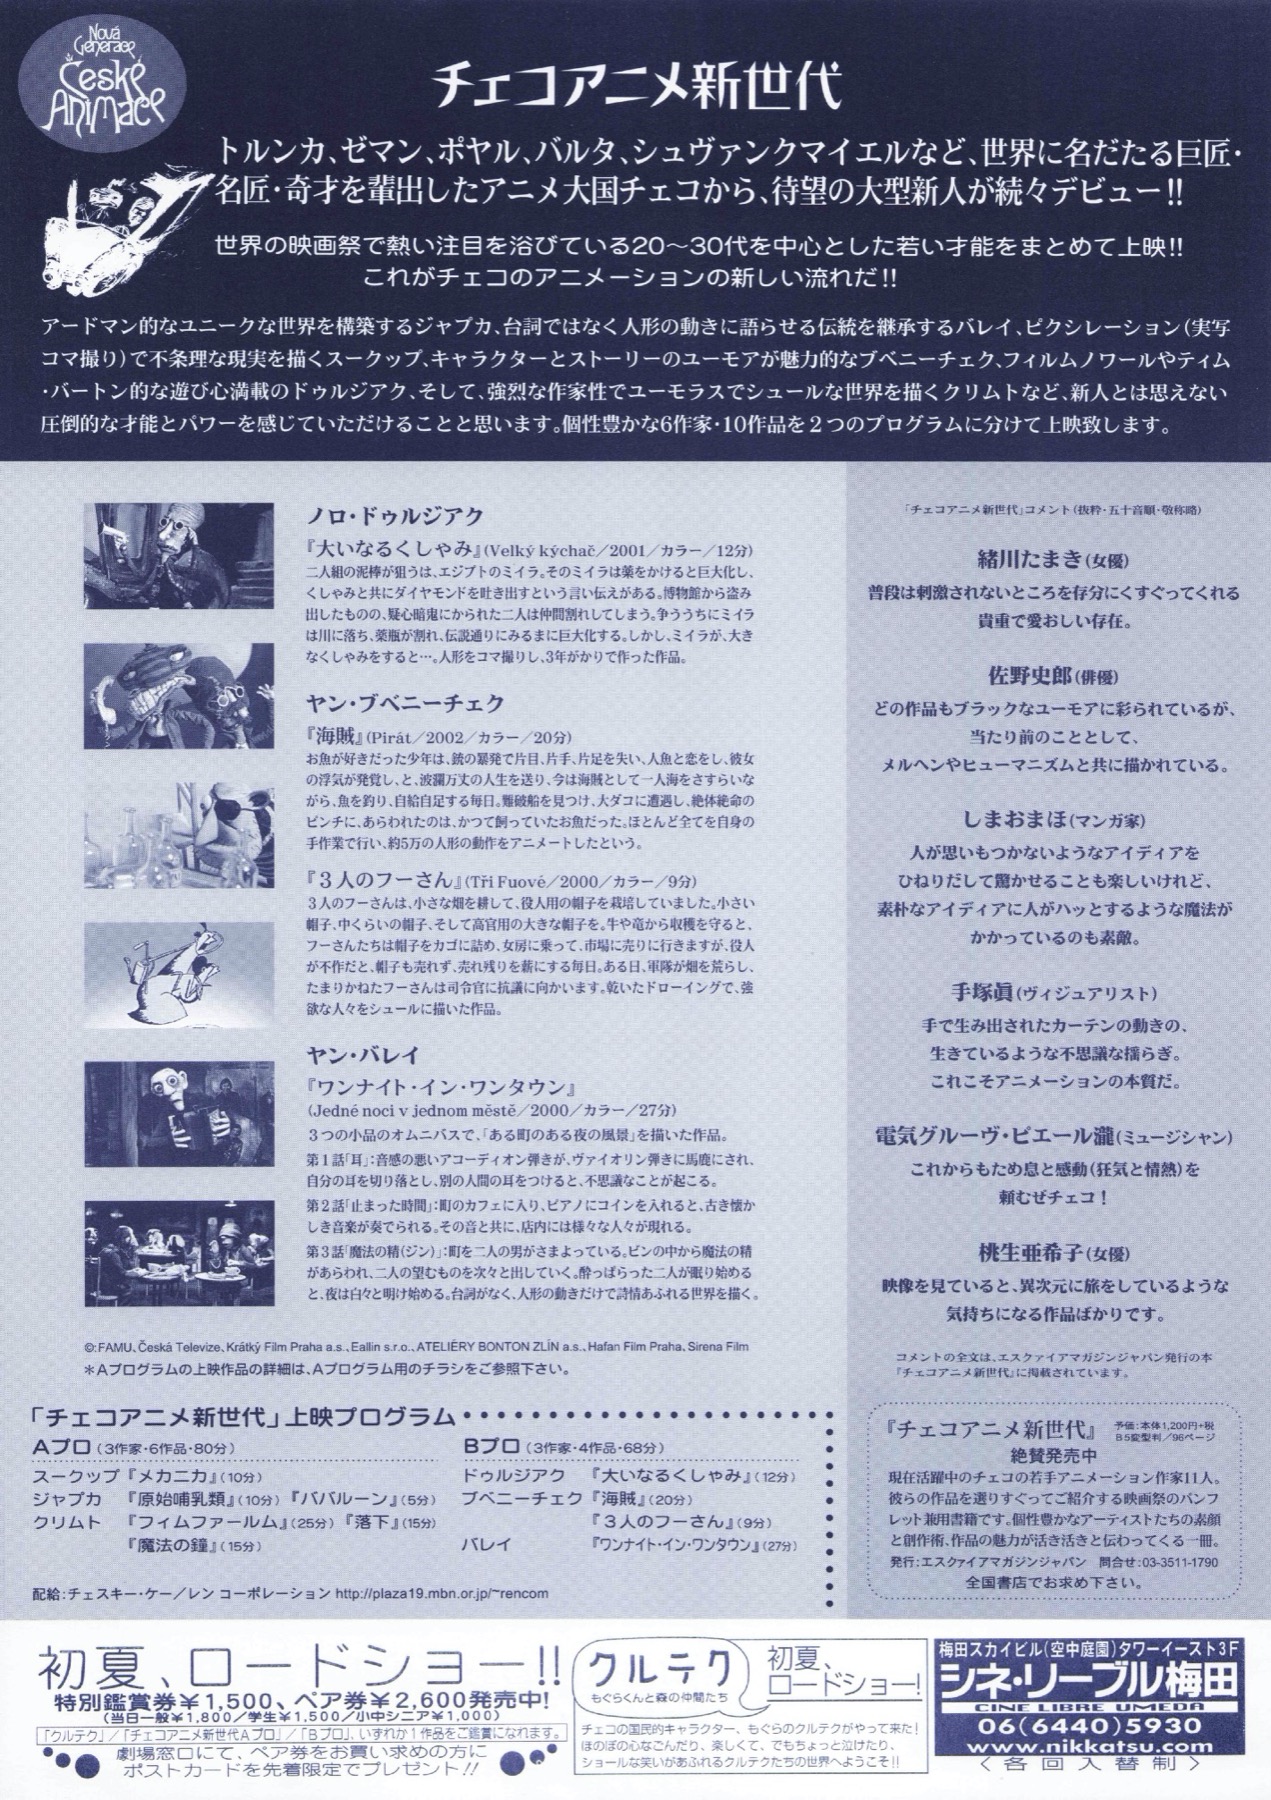 チェコアニメ新世代 DVD-BOX - DVD